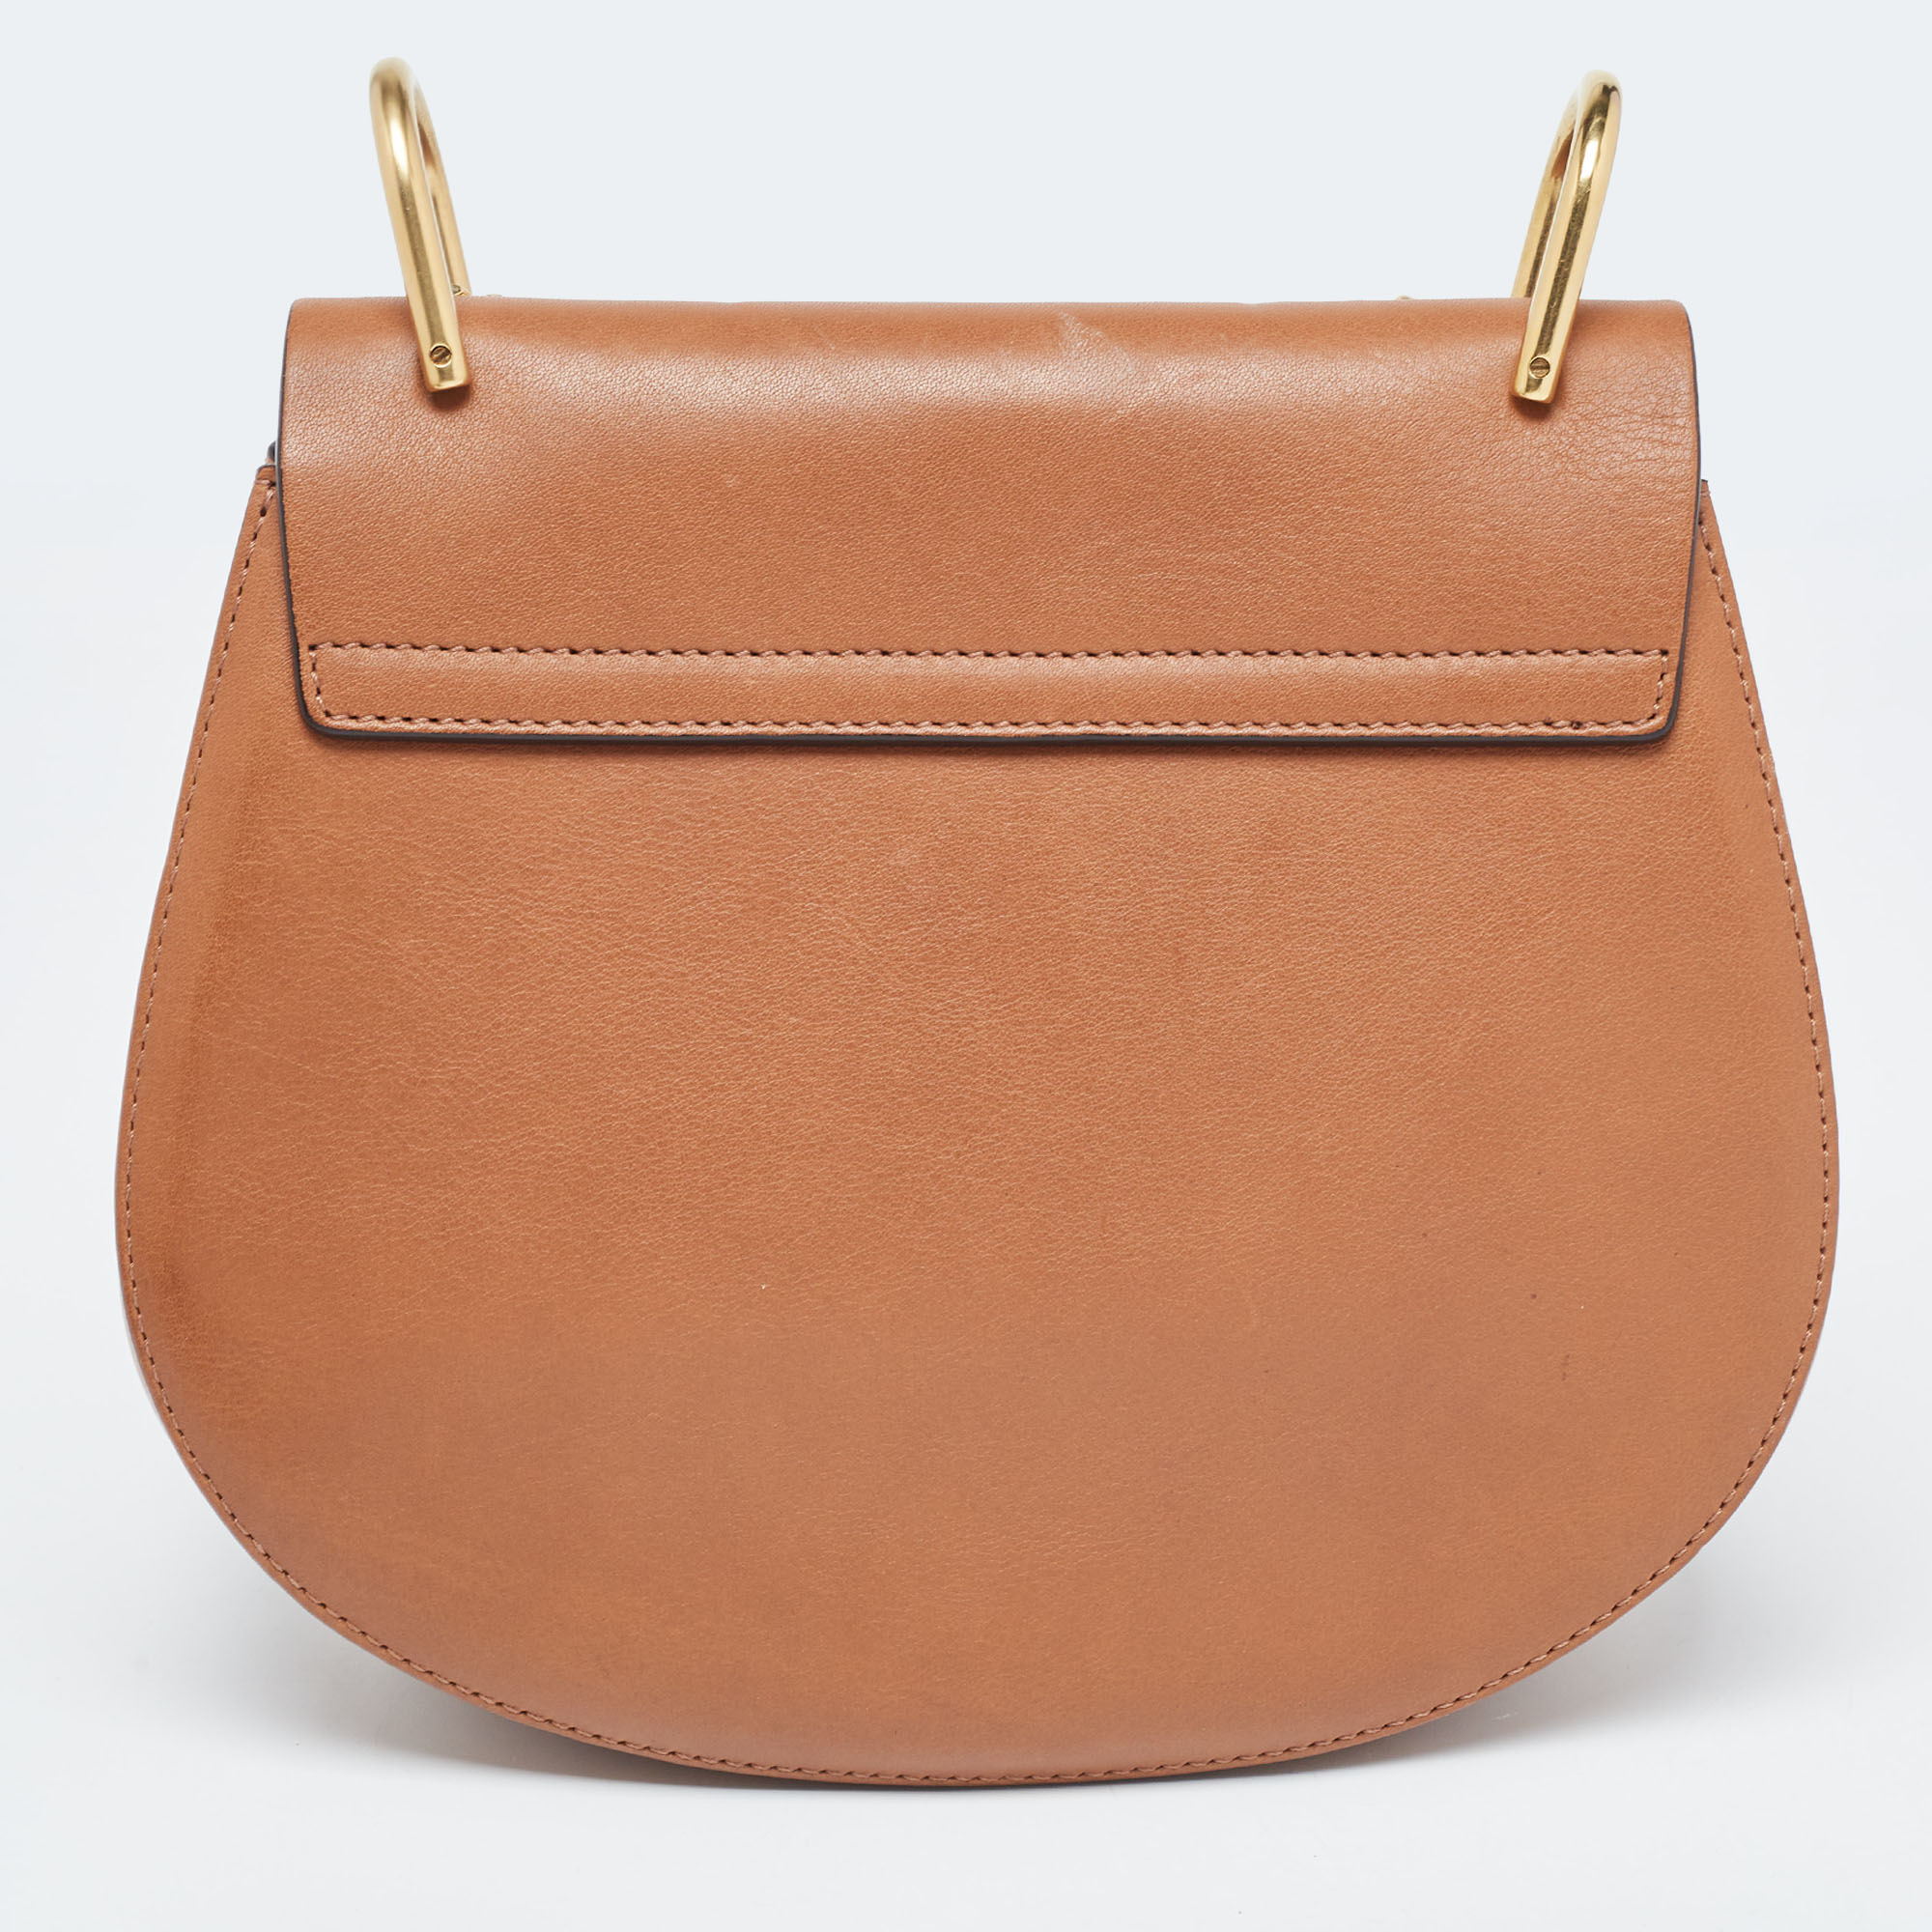 Chloe Beige/Tan Raffia And Leather Medium Drew Shoulder Bag